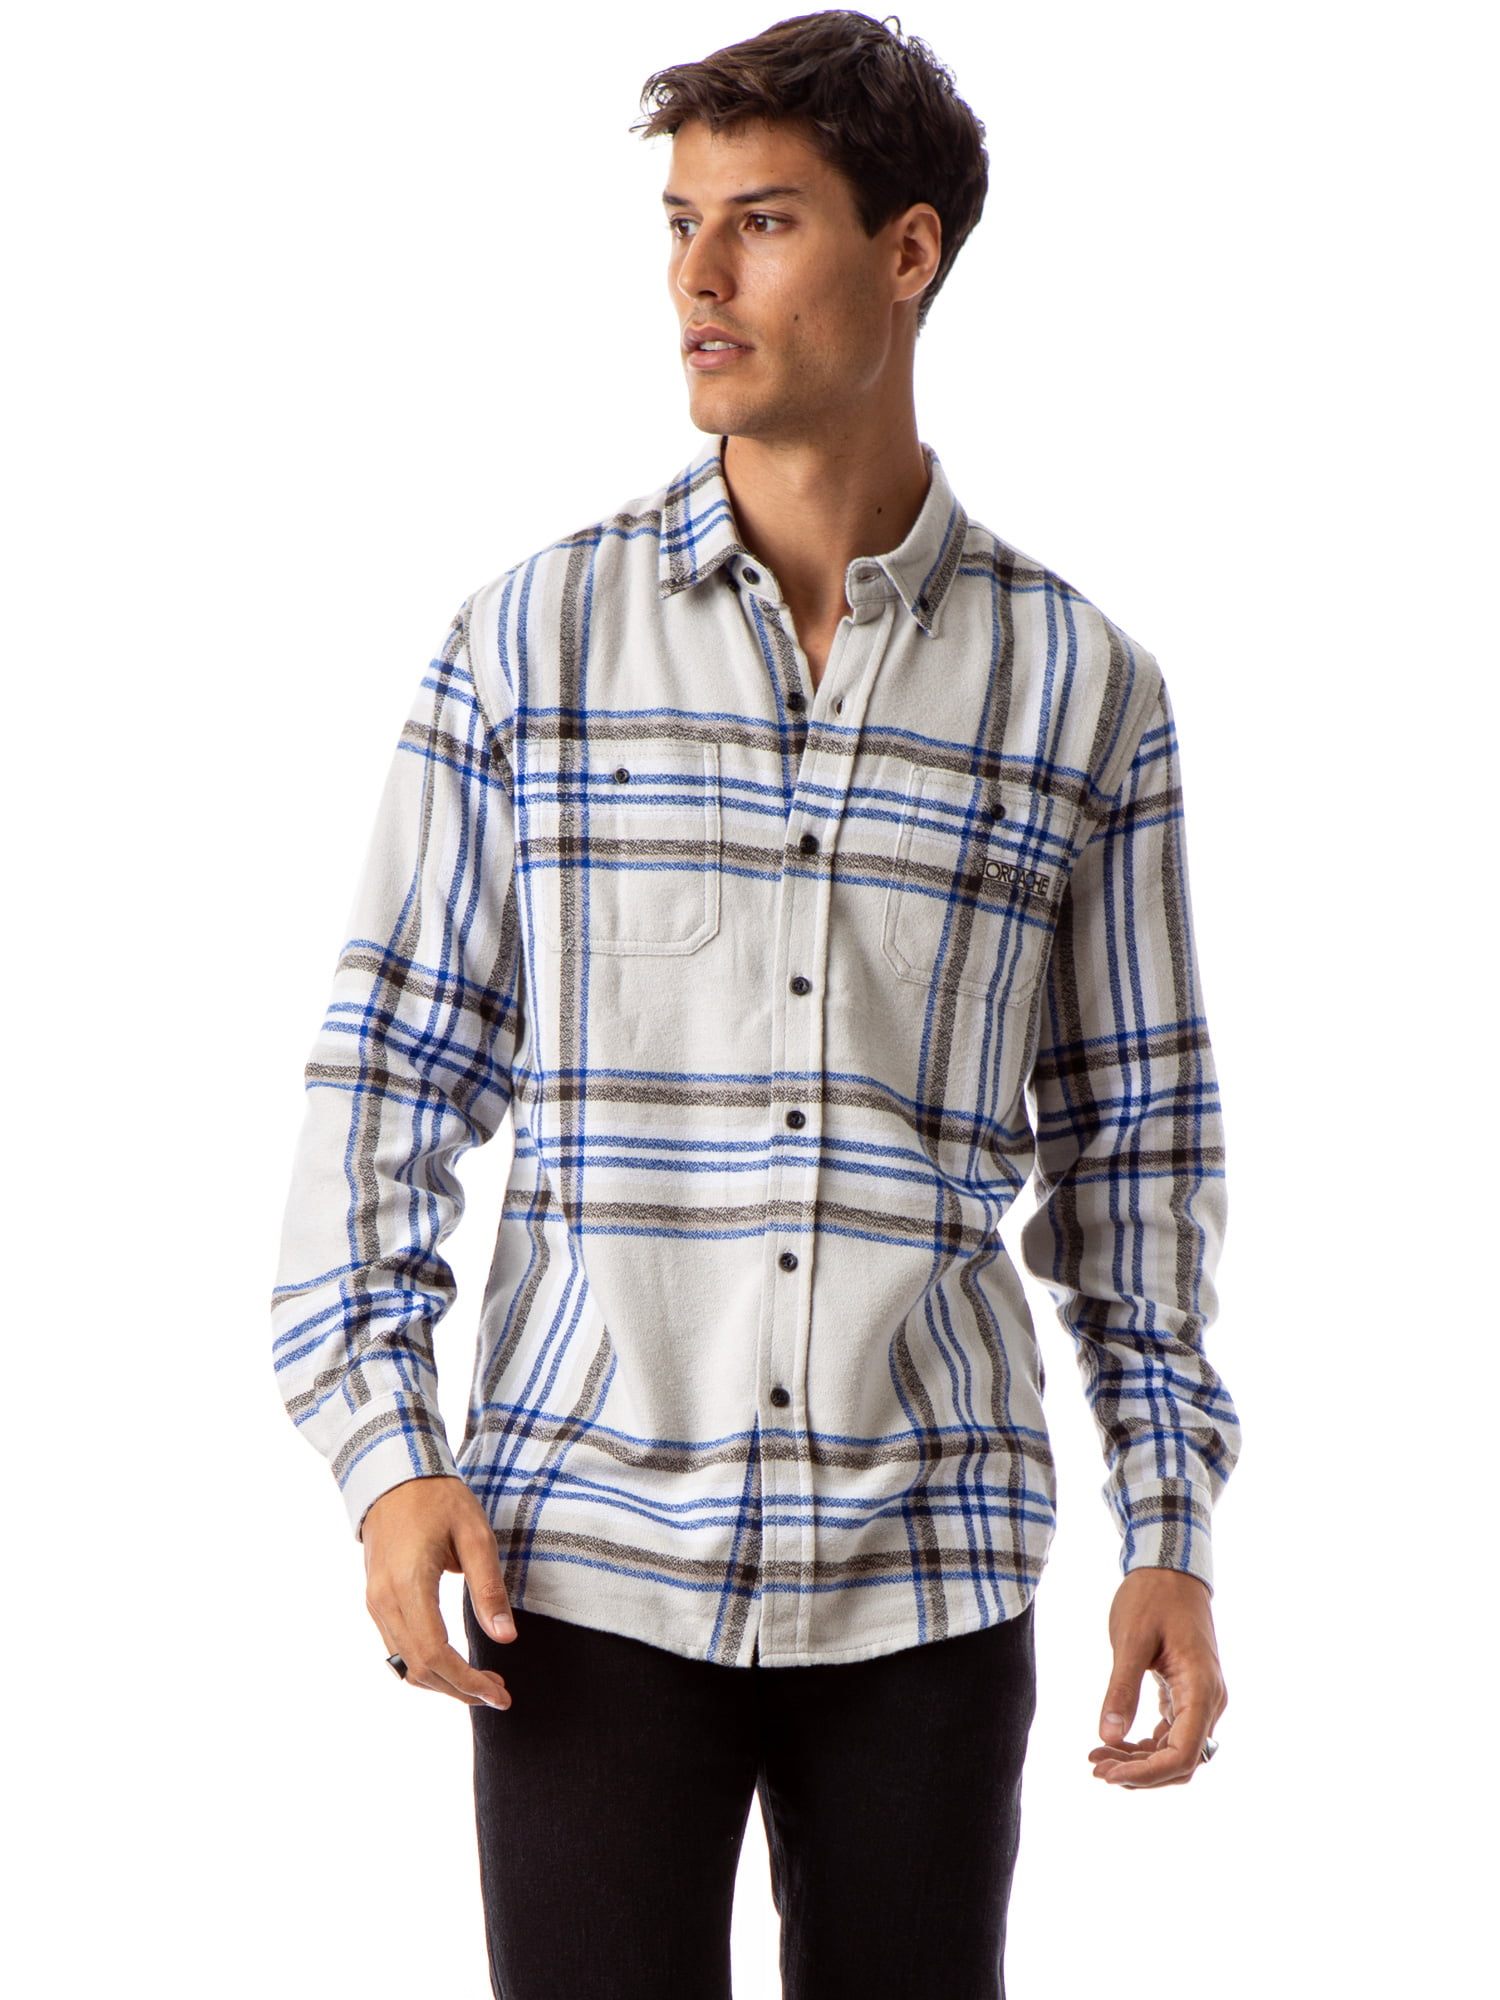 Jordache Vintage - Jordache Vintage Men's Tony Flannel Shirt, Up to 3xl ...